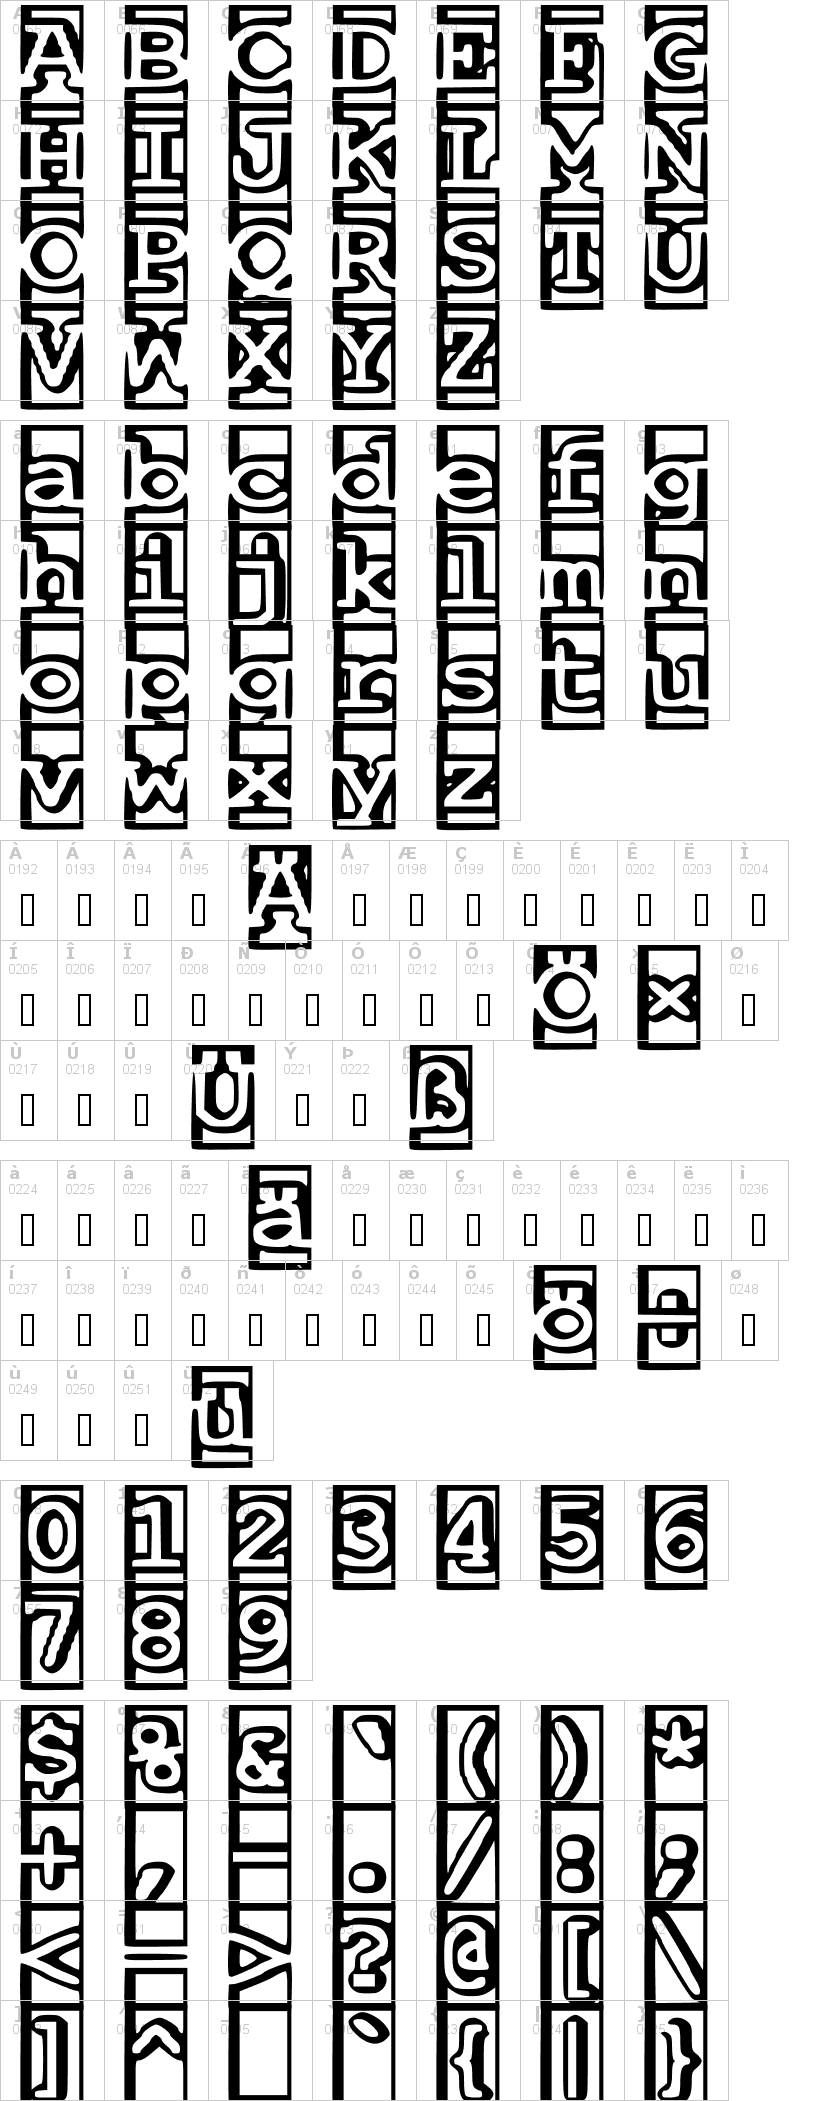 Lettere dell'alfabeto del font one-and-a-half-feet-under con le quali è possibile realizzare adesivi prespaziati